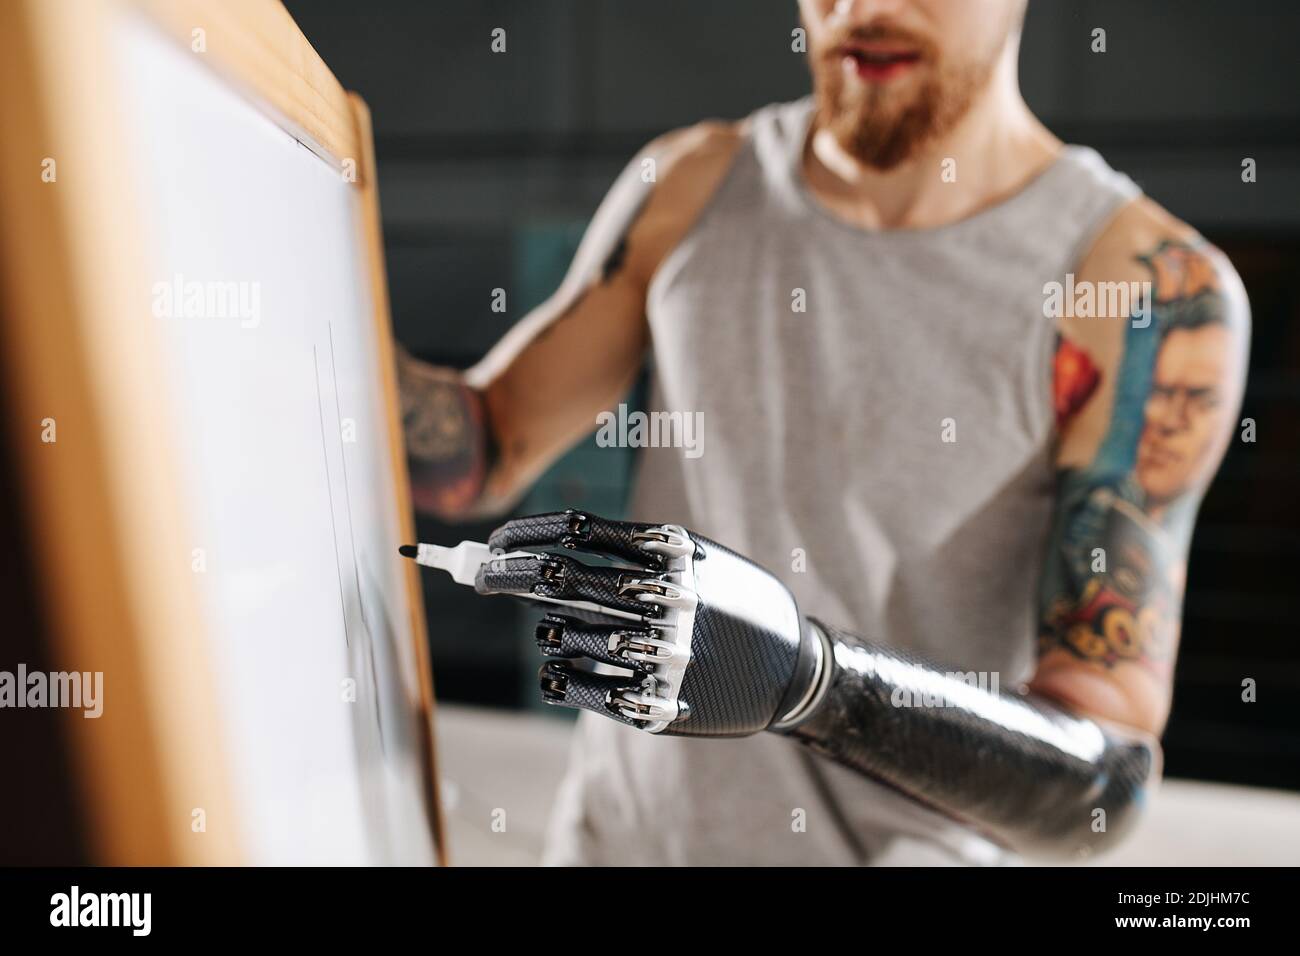 Image d'un homme de cyborg avec une main bionique sur laquelle écrire une carte avec marqueur permanent Banque D'Images